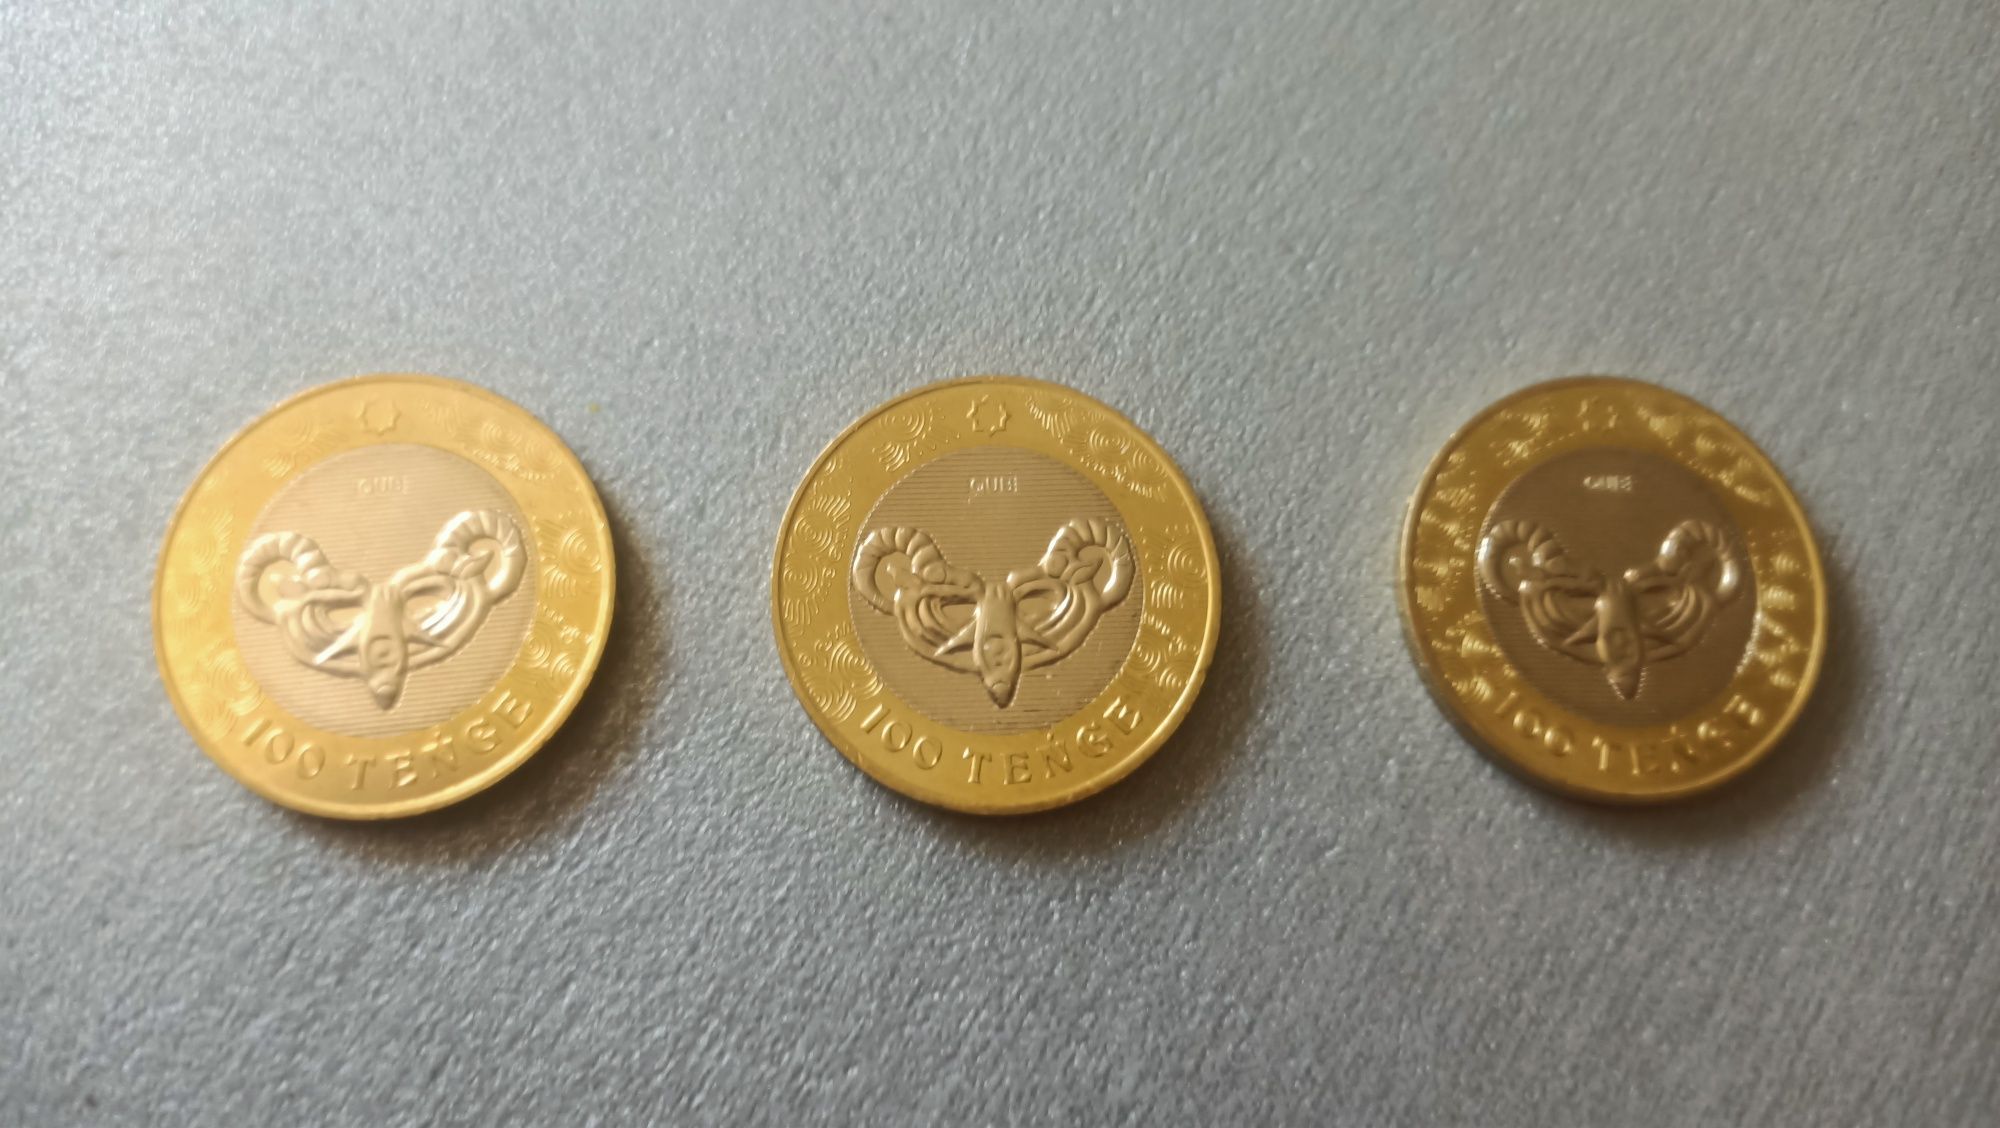 Обмен на монеты этой же серии